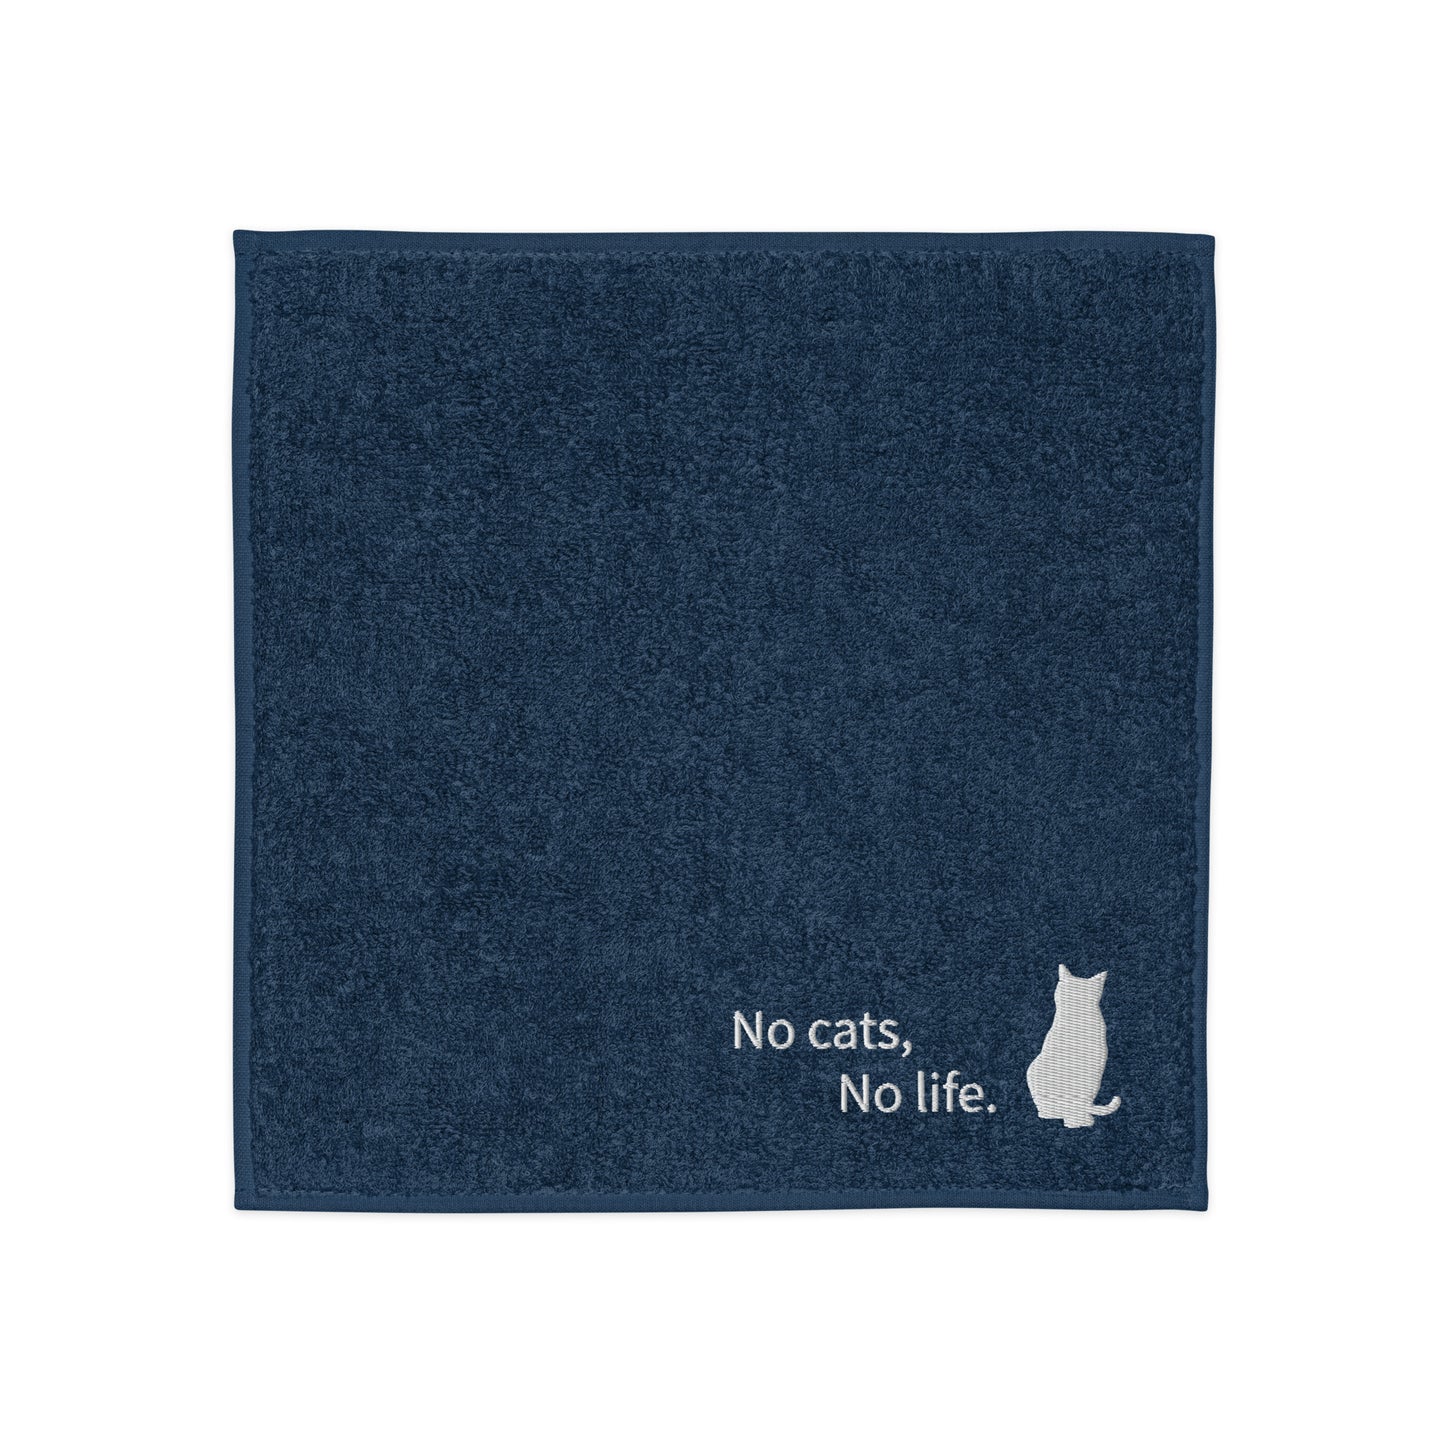 【文言変更可】No cats, No life. コットンハンカチタオル